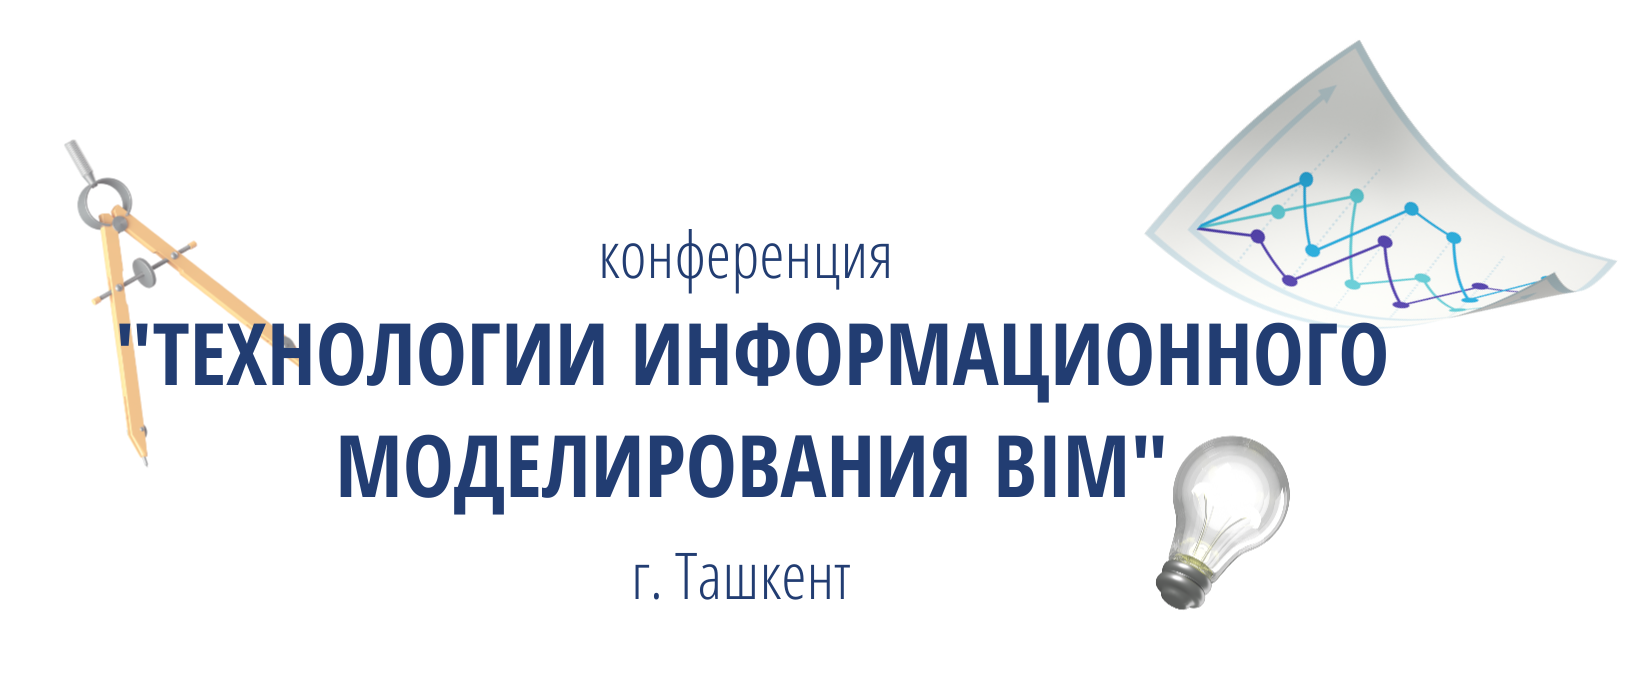 Конференция «Технологии информационного моделирования BIM» в г. Ташкент